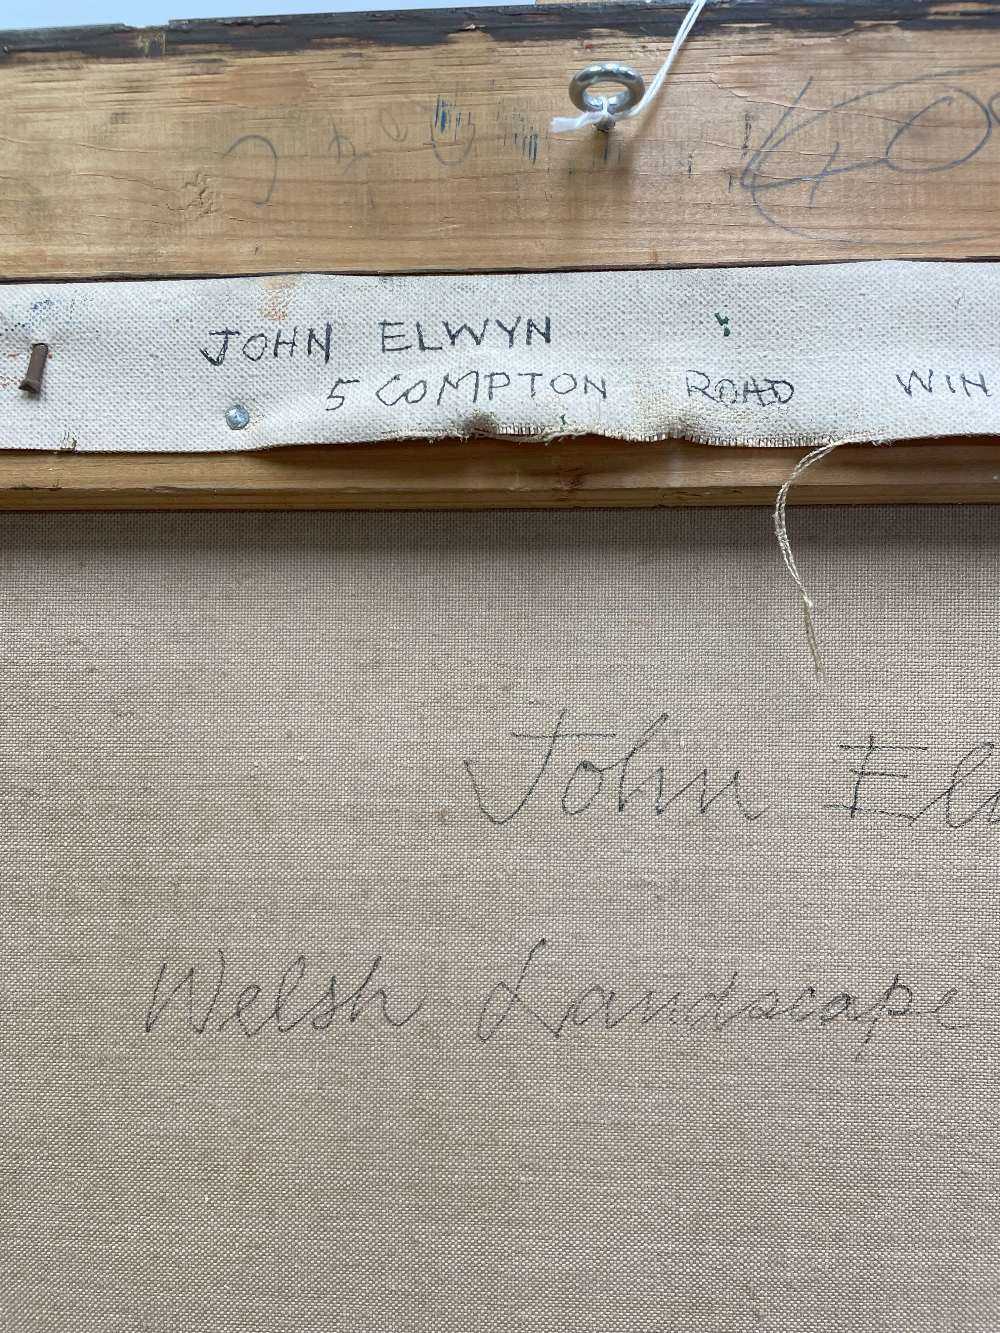 ‡ JOHN ELWYN (Welsh 1916-1997) oil on canvas - entitled verso, 'Welsh Landscape', signed, 50 x 50cms - Image 13 of 15